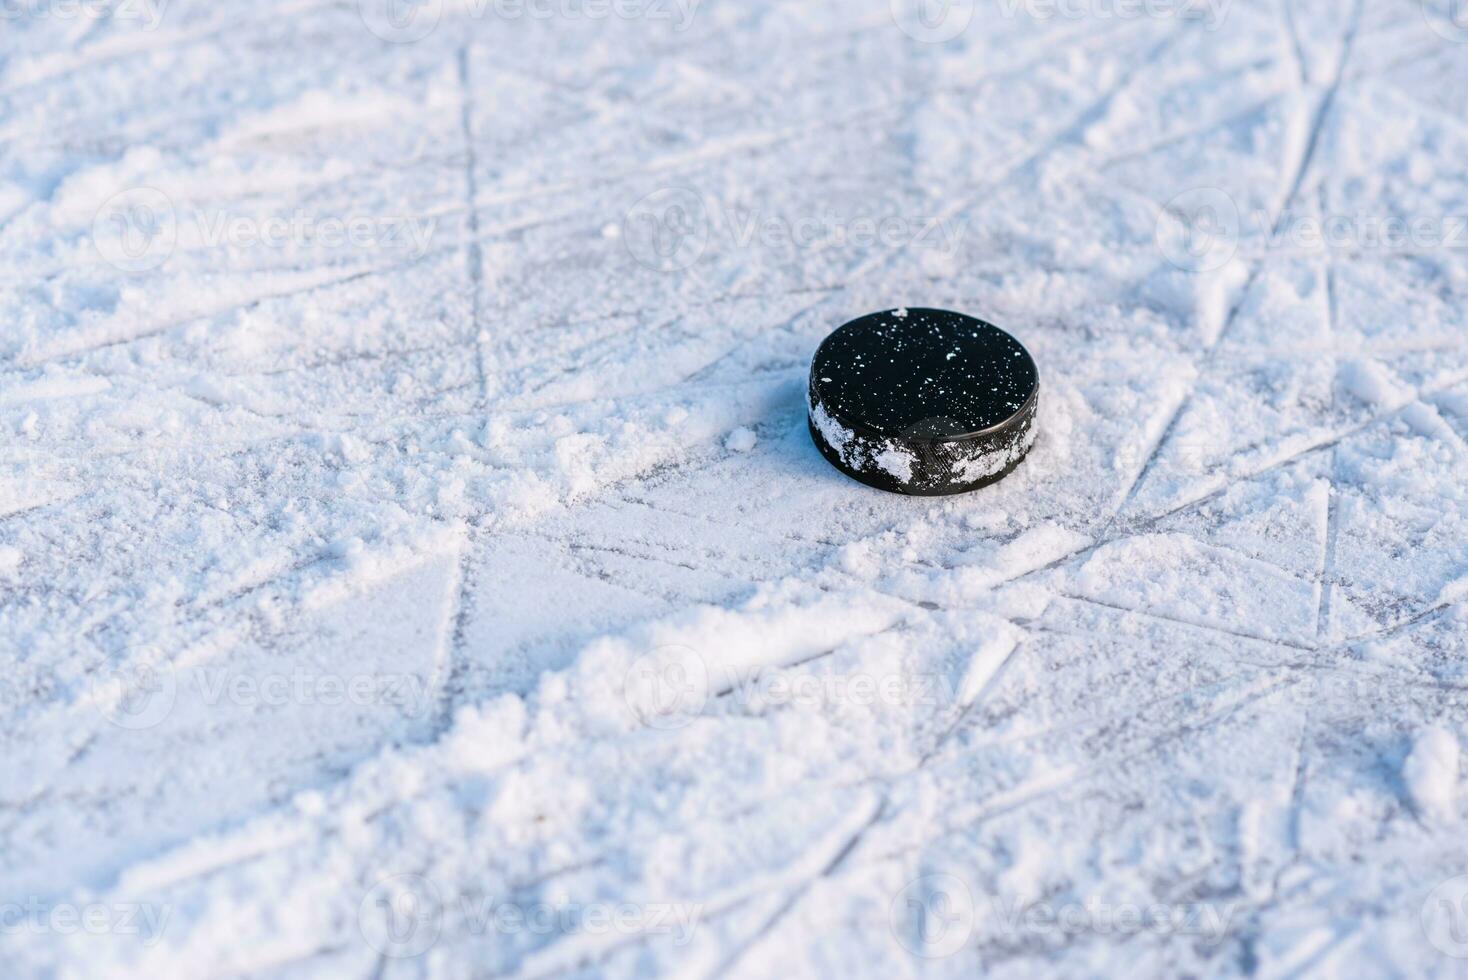 svart hockey puck lögner på is på stadion foto